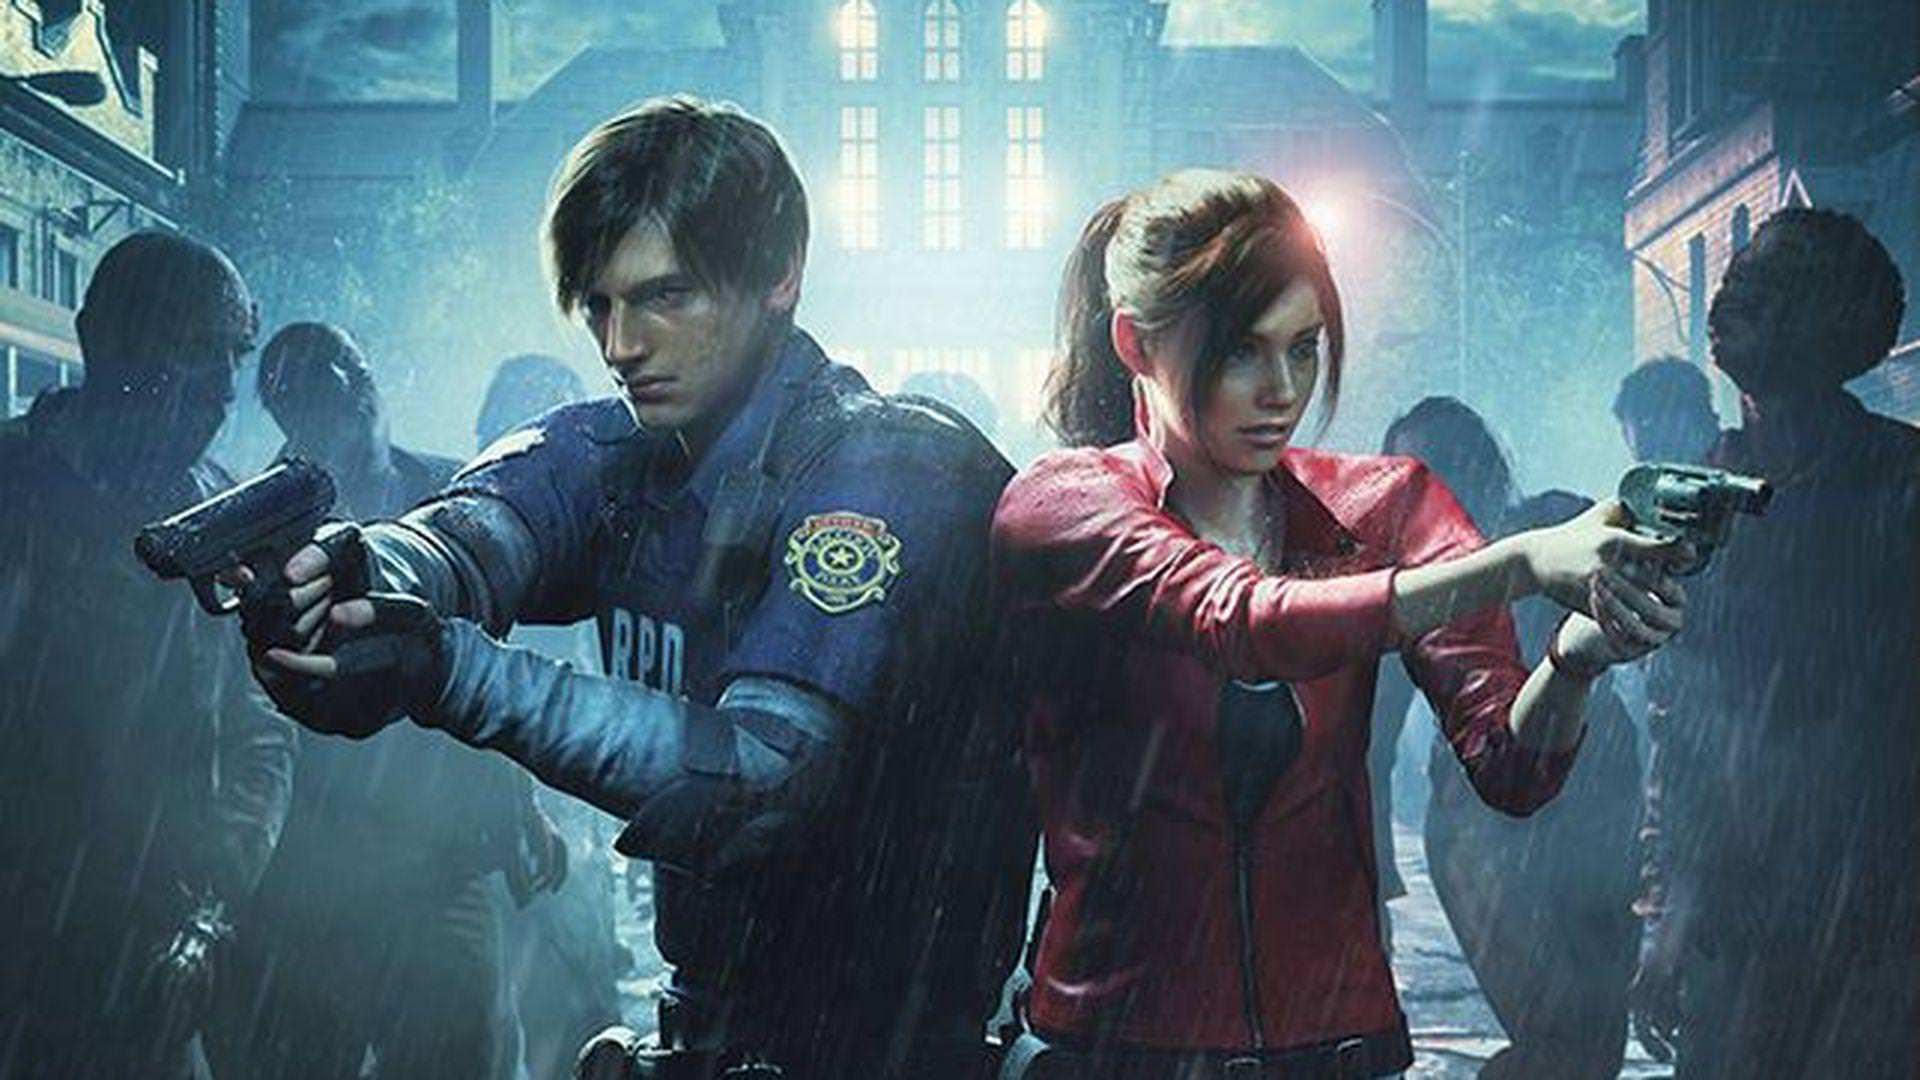 فروش ریمیک Resident Evil 2 به ۱۳.۹ میلیون نسخه رسید